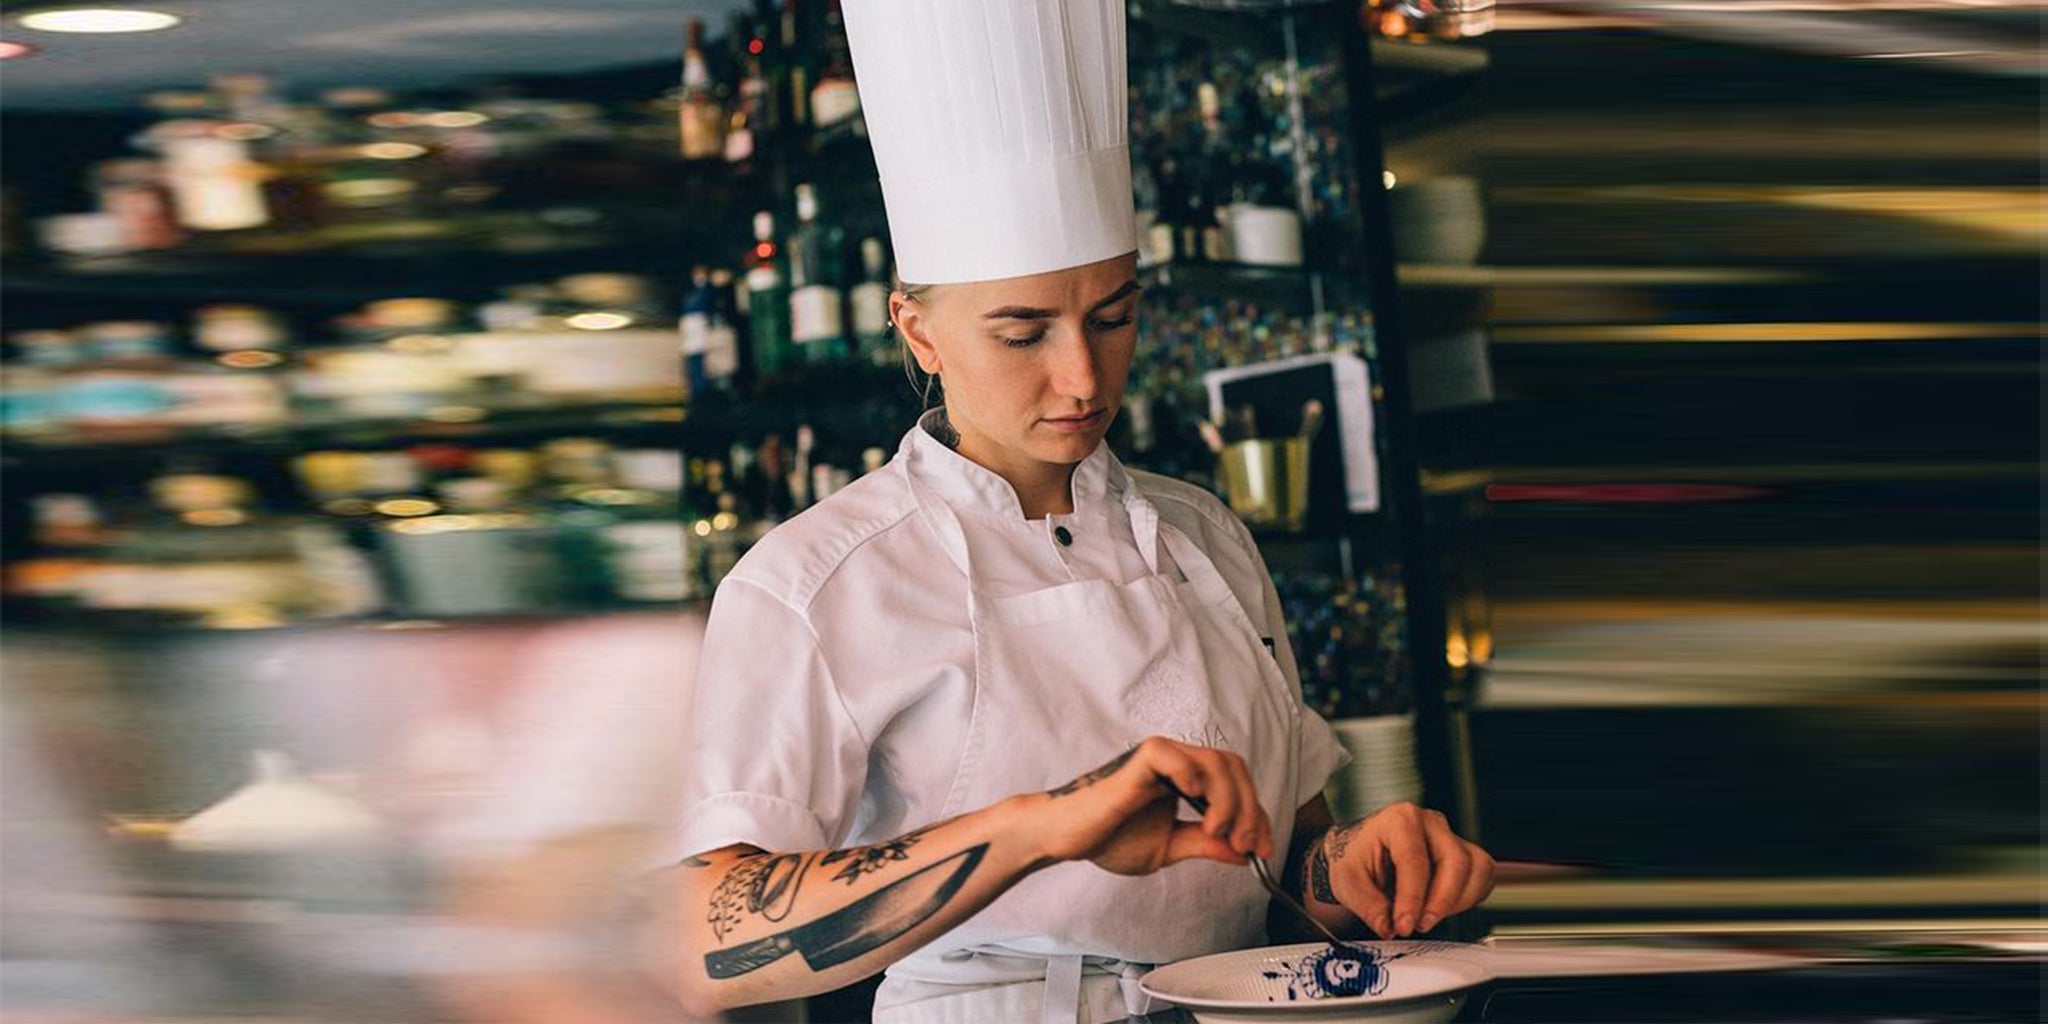 En professionell kvinnlig kock iklädd en Segers kockrock modell 1024 koncentrerar sig på att finslipa en anrättning i ett livligt restaurangkök, hennes tatueringar tillför en personlig touch till den klassiska vita kockuniformen.